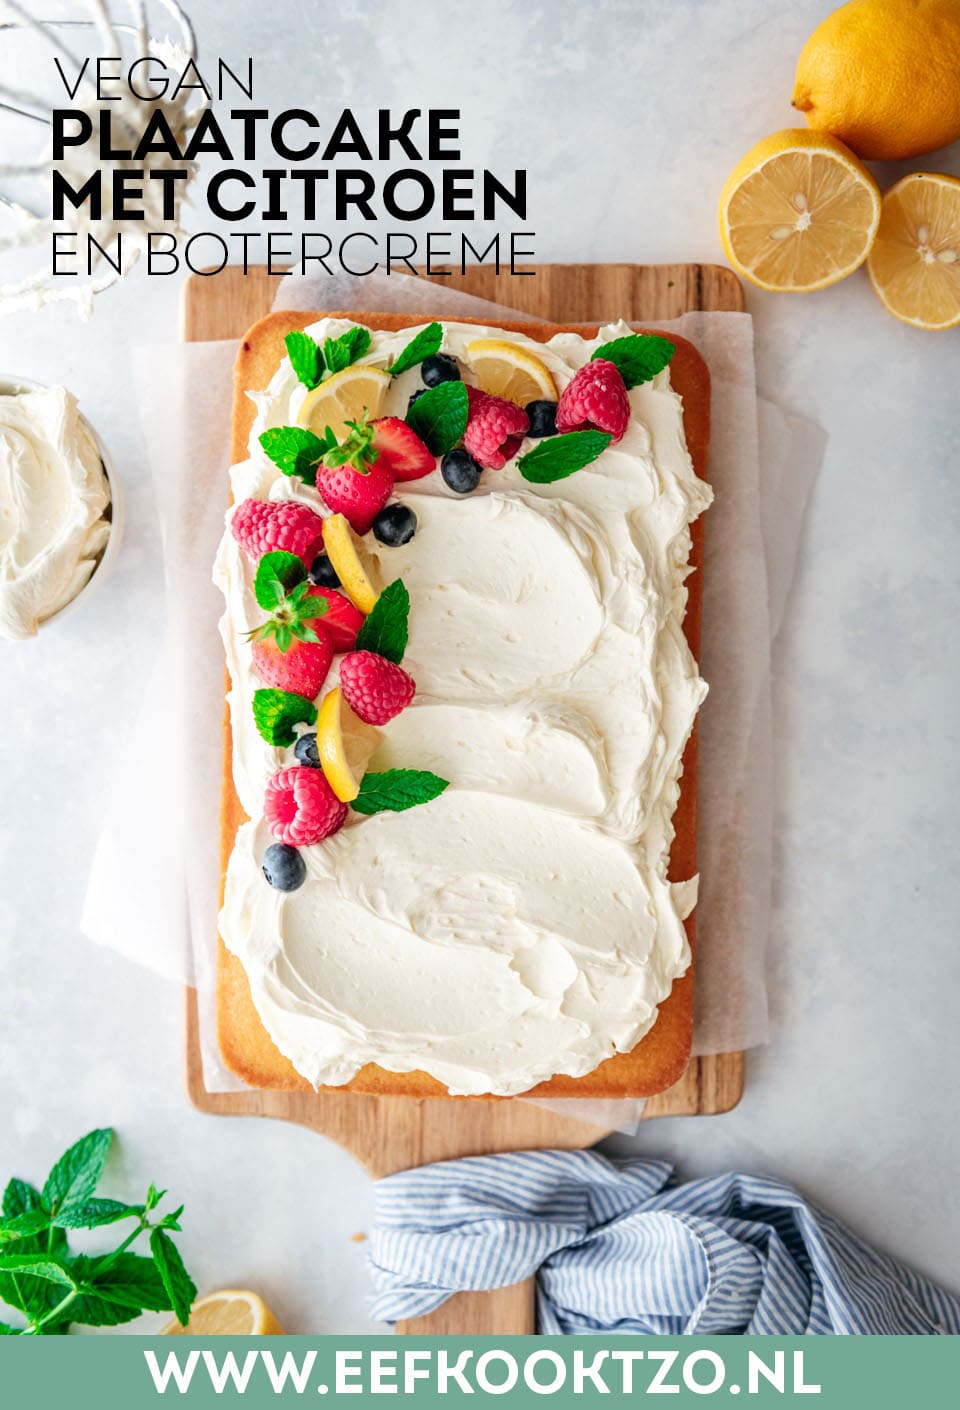 Plaatcake met citroen Pinterest Collage